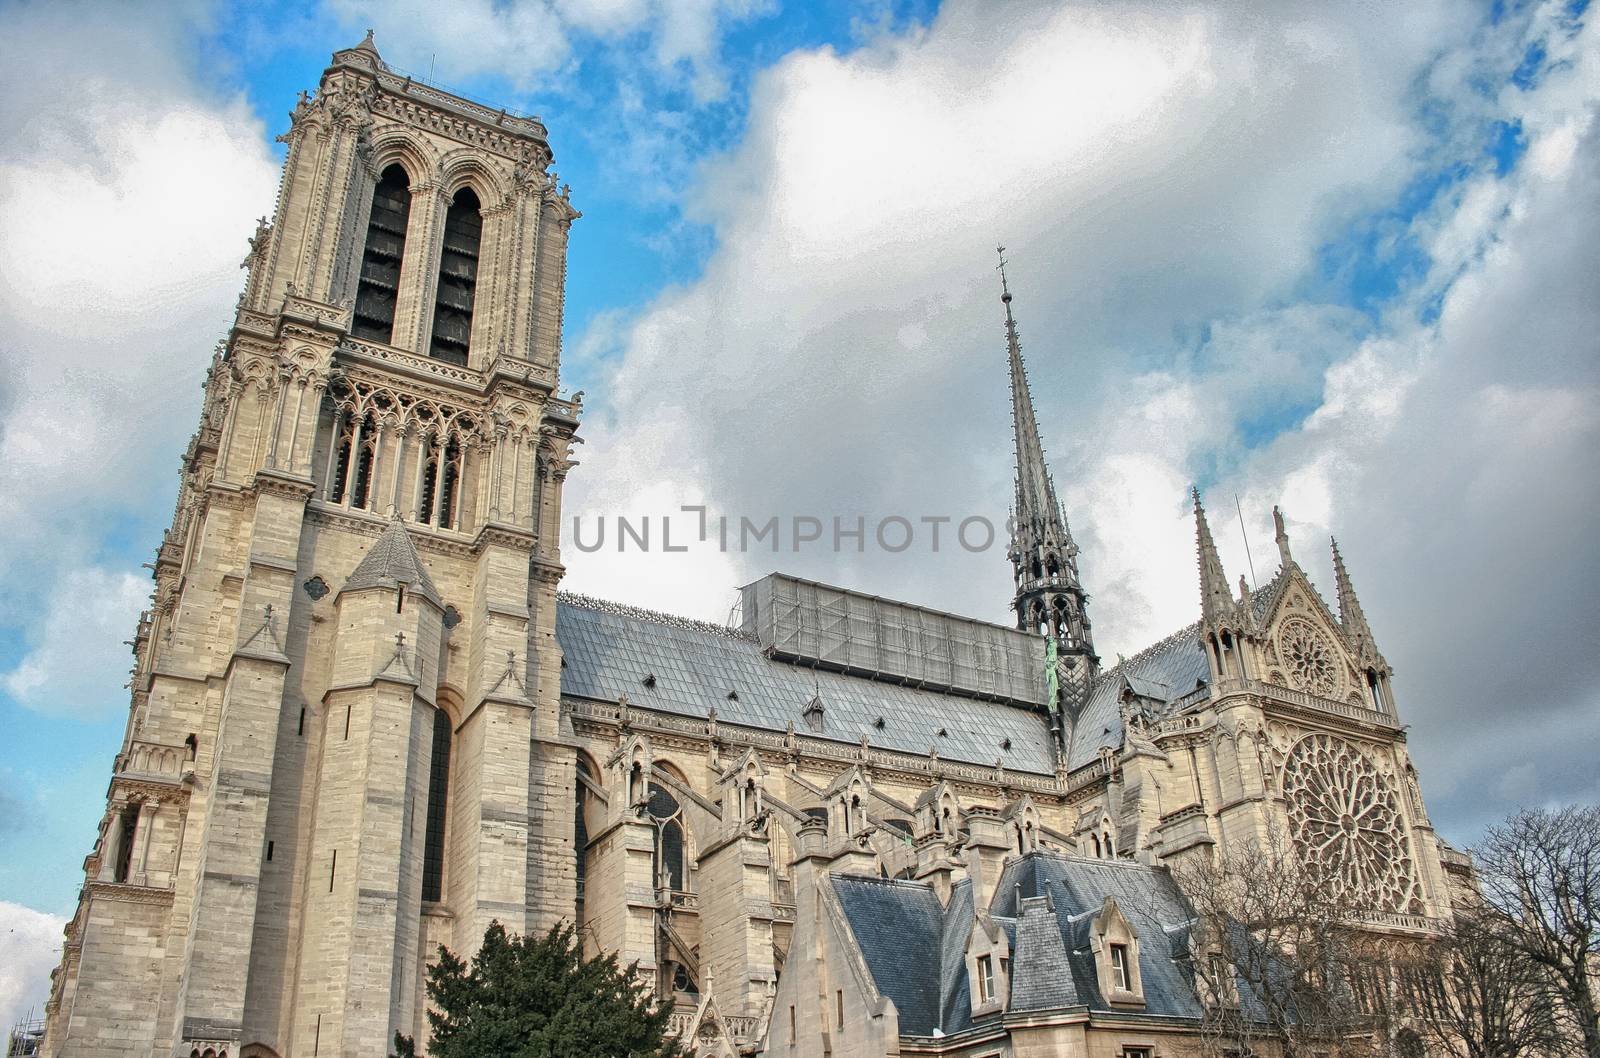 La Cathedrale de Notre-Dame. Paris famous Cathedral.